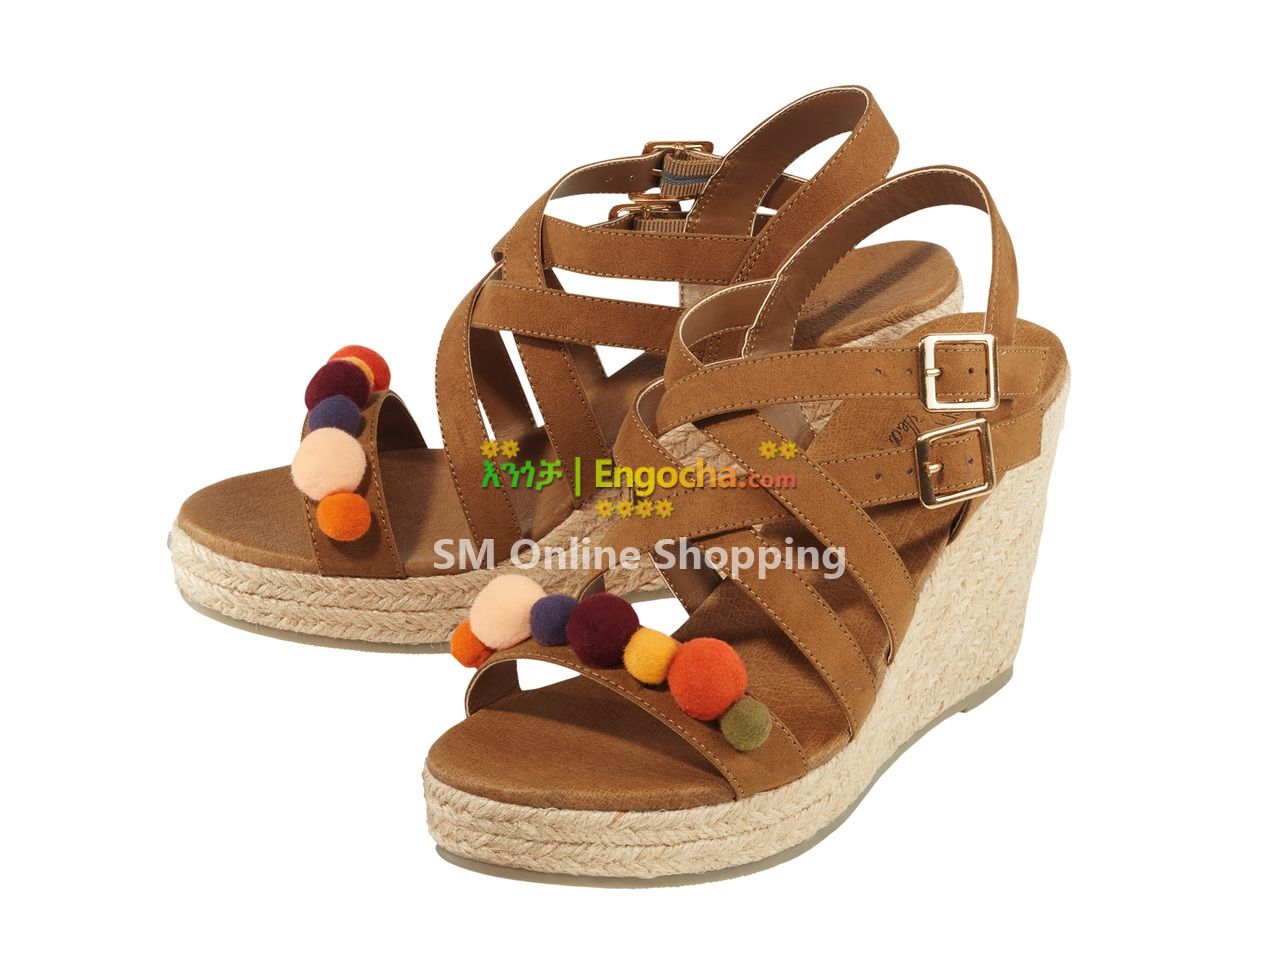 Block Heel Sandals for sale & price in Ethiopia - Engocha.com | Buy Block  Heel Sandals in Addis Ababa Ethiopia | Engocha.com